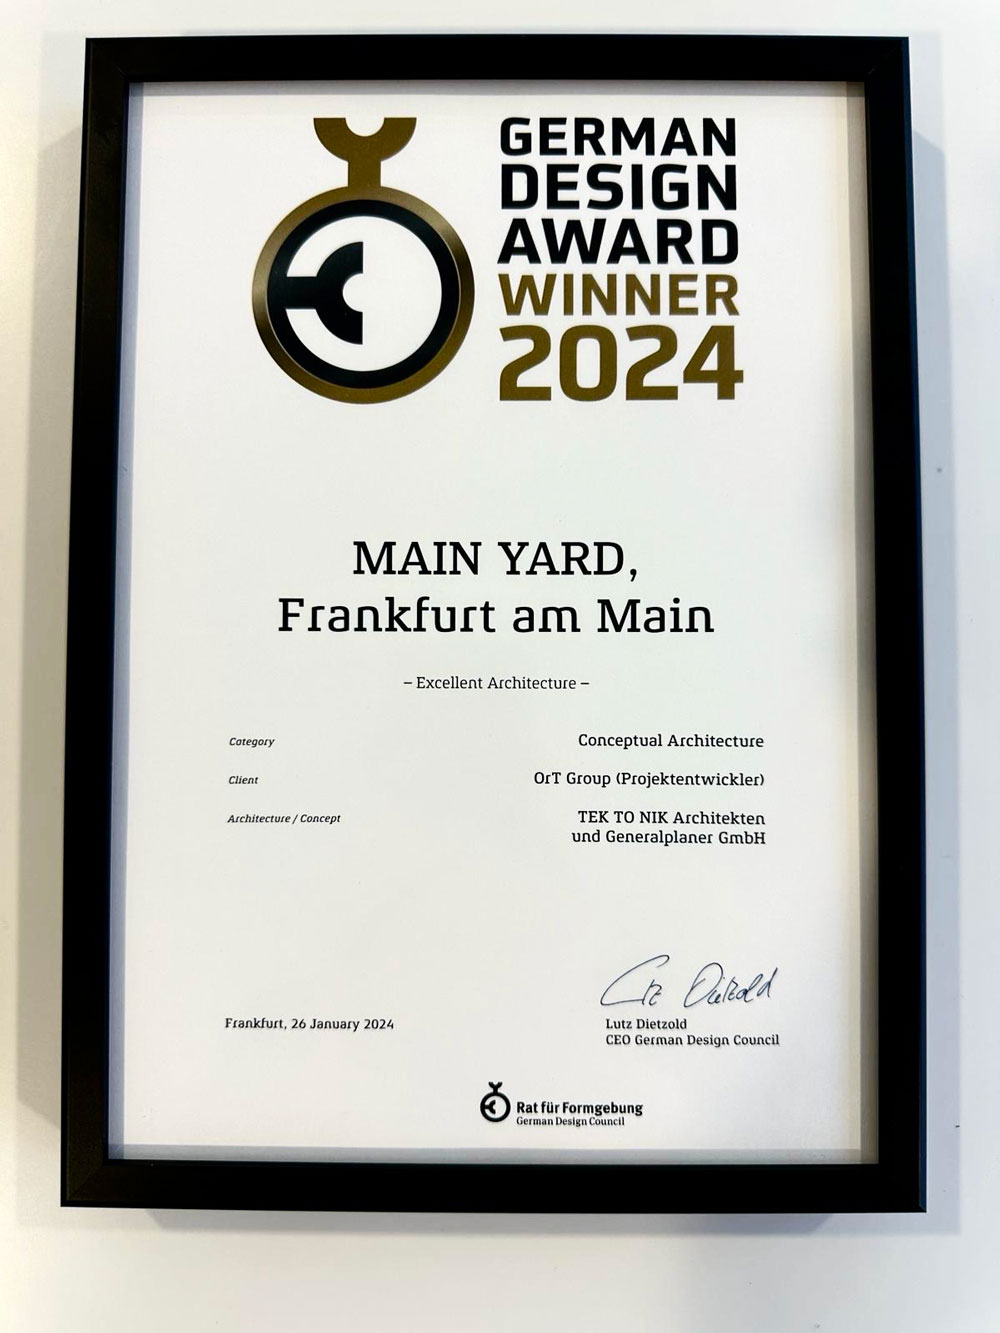 TEK TO NIK has won the German Design Award for 2024.